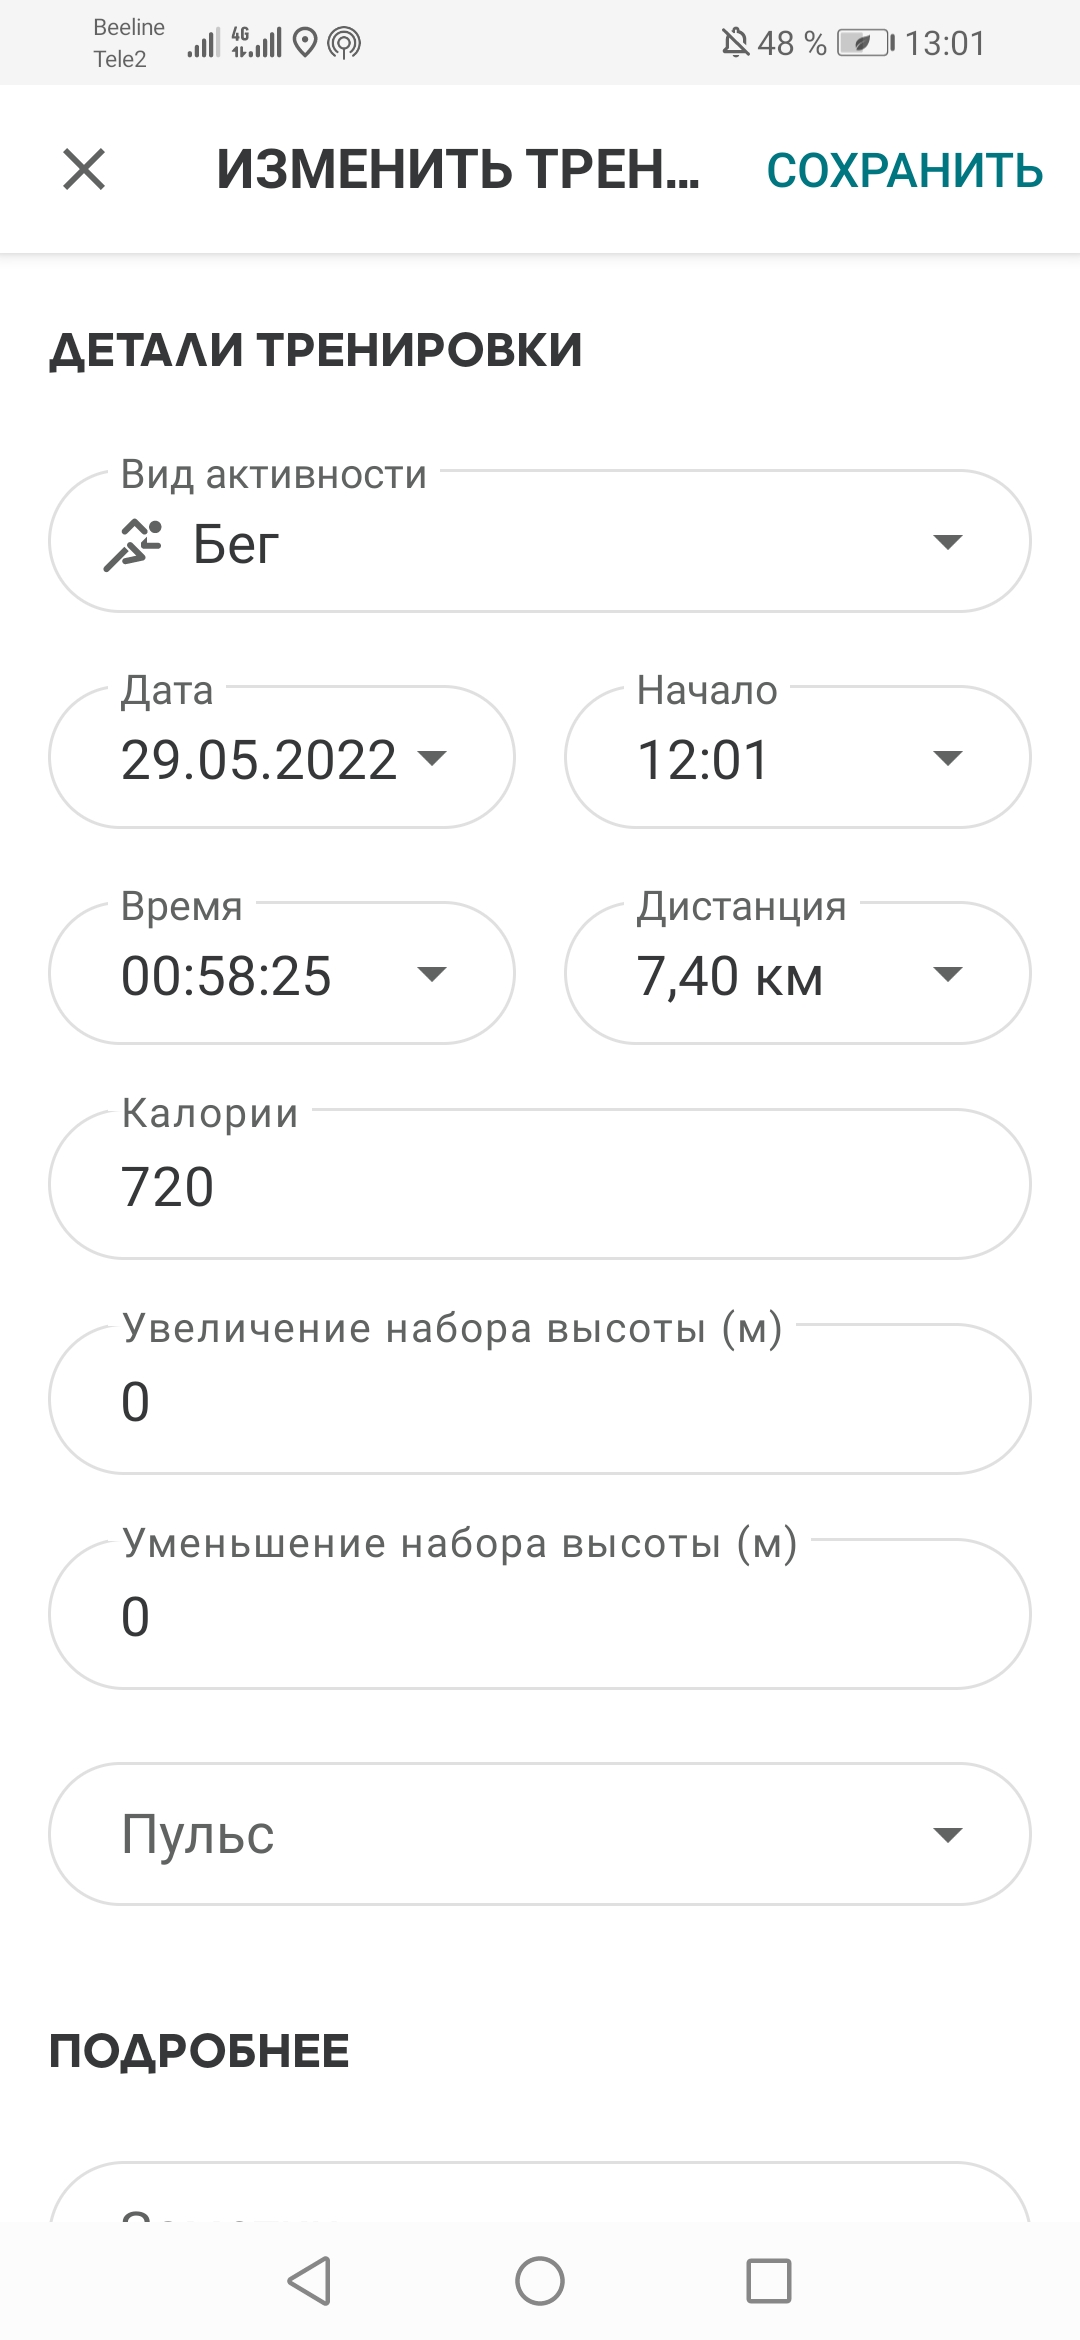  Загрузка от 29.05.2022 00:00:00 Евдокимова Светлана 